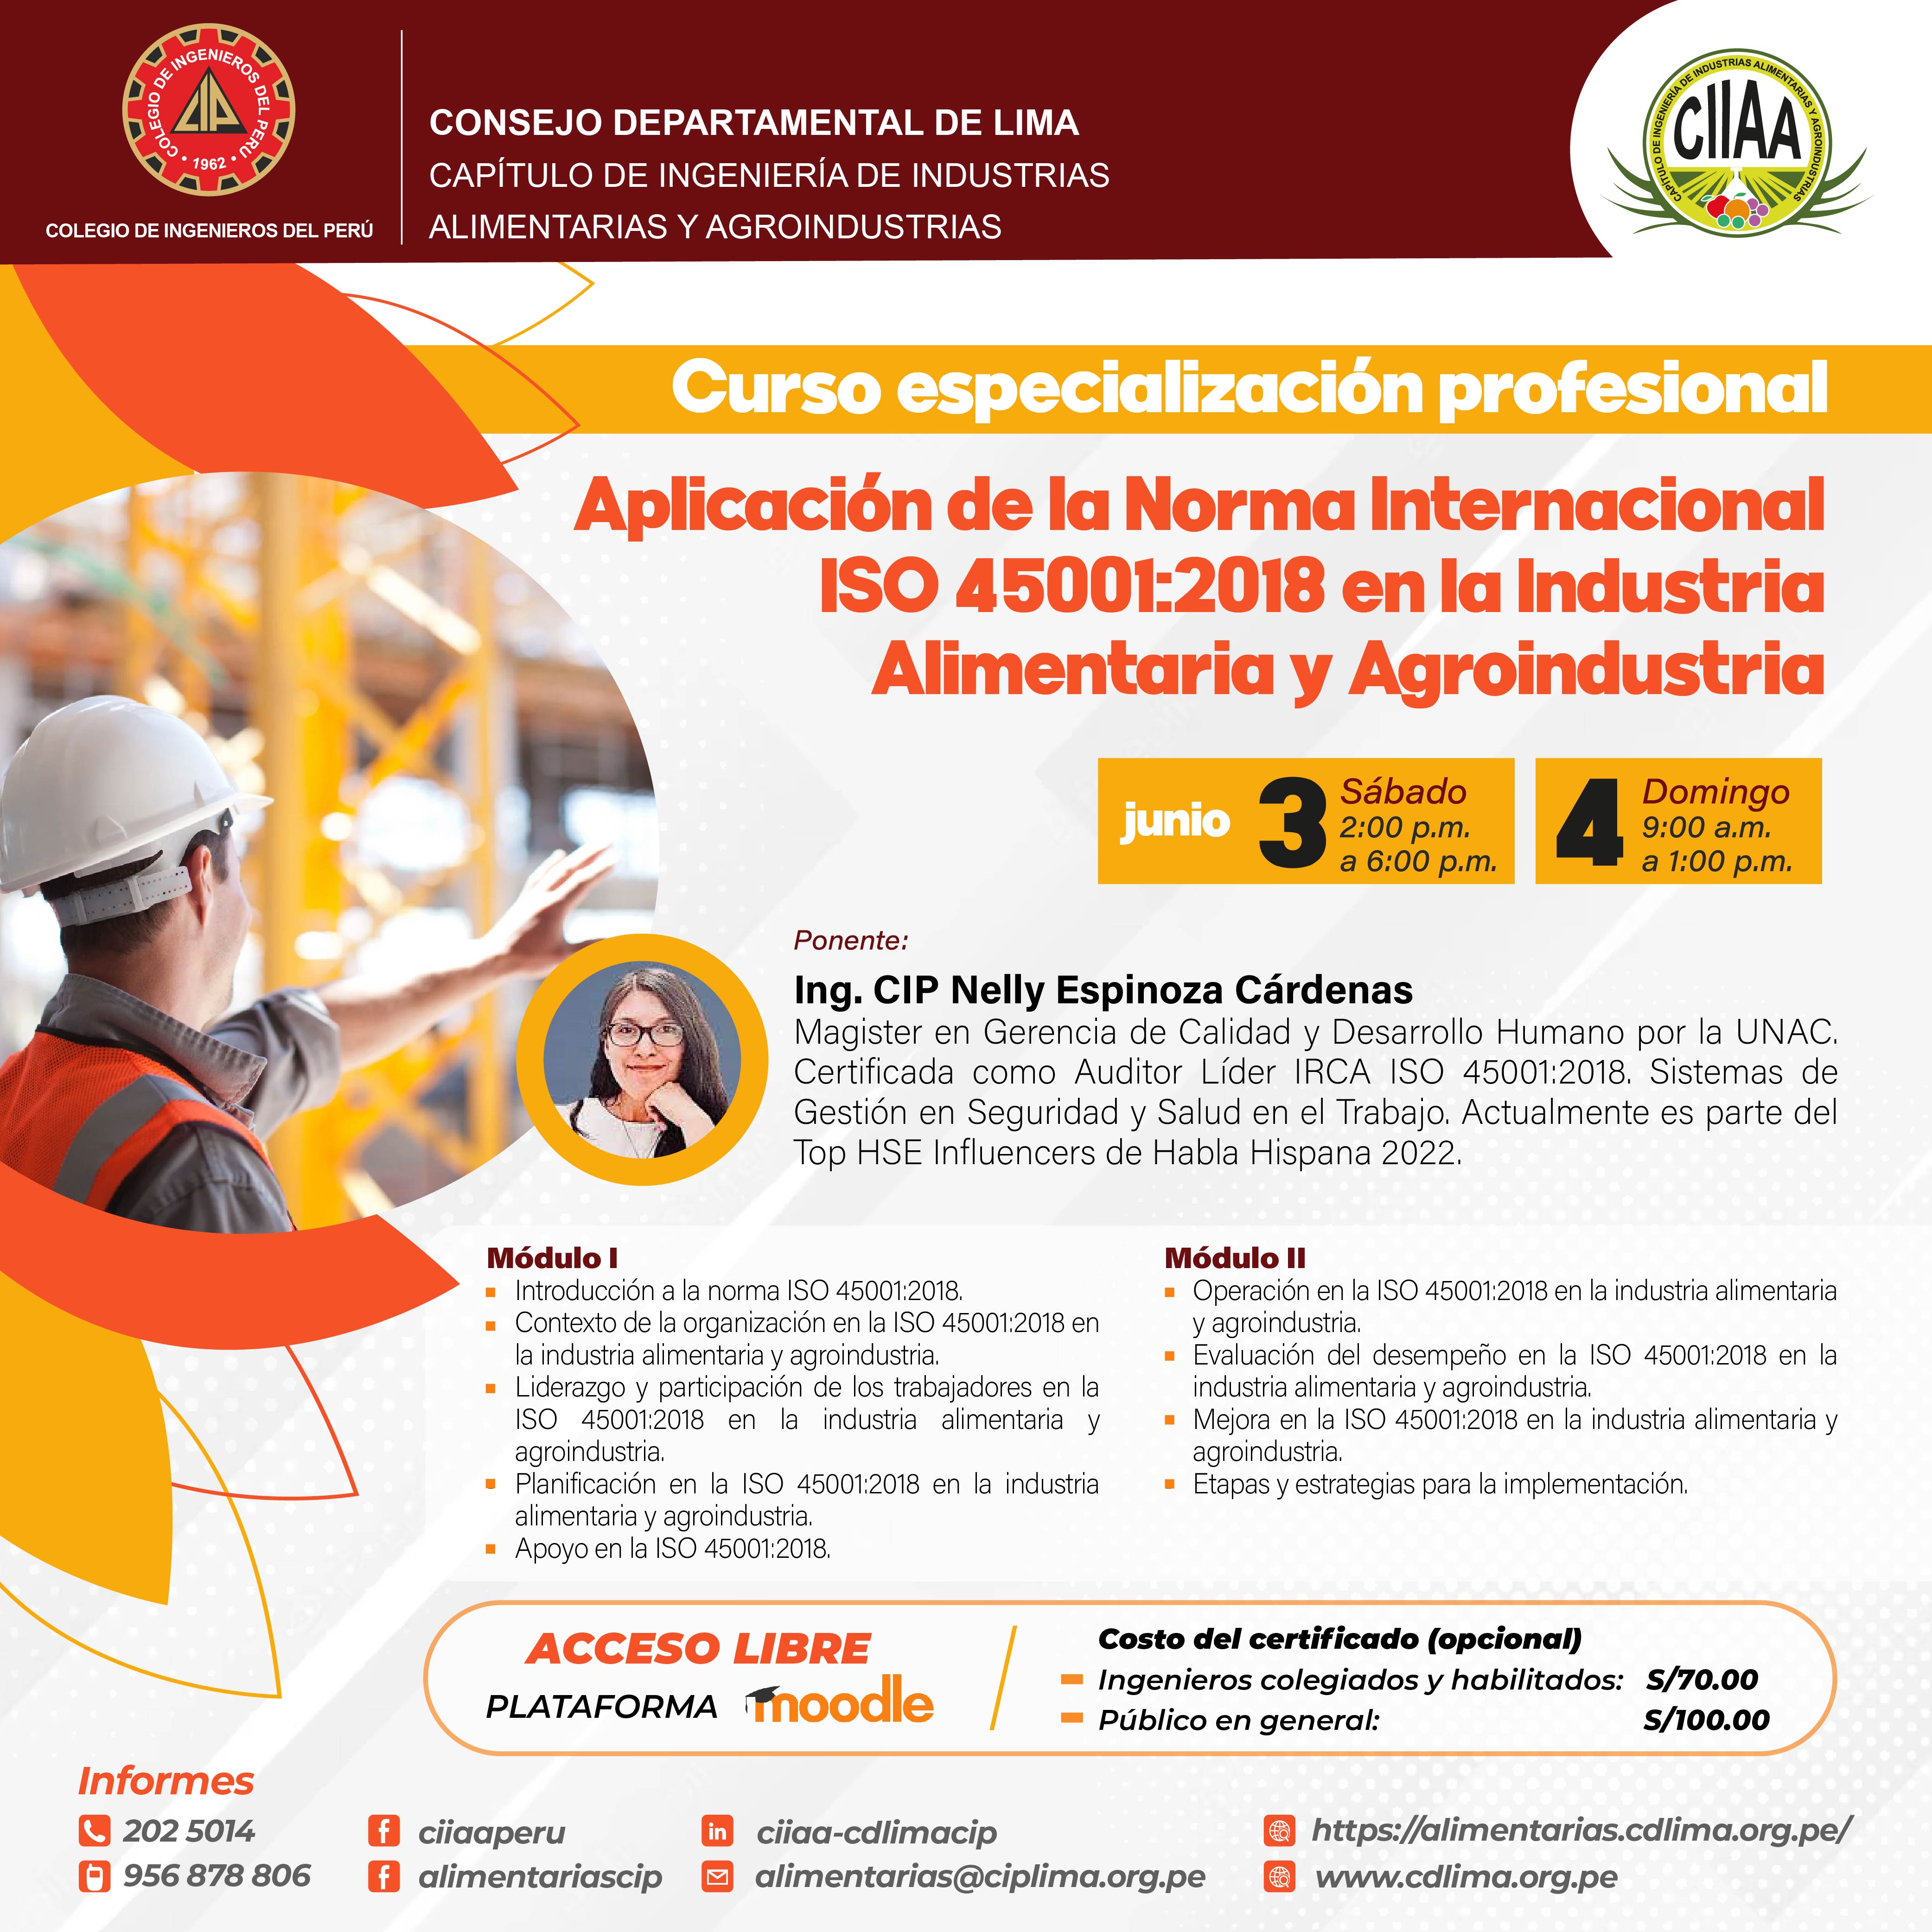 Curso de Especialización Profesional  Aplicación de la Norma Internacional ISO 45001:2018 en la industria Alimentaria y Agroindustrial